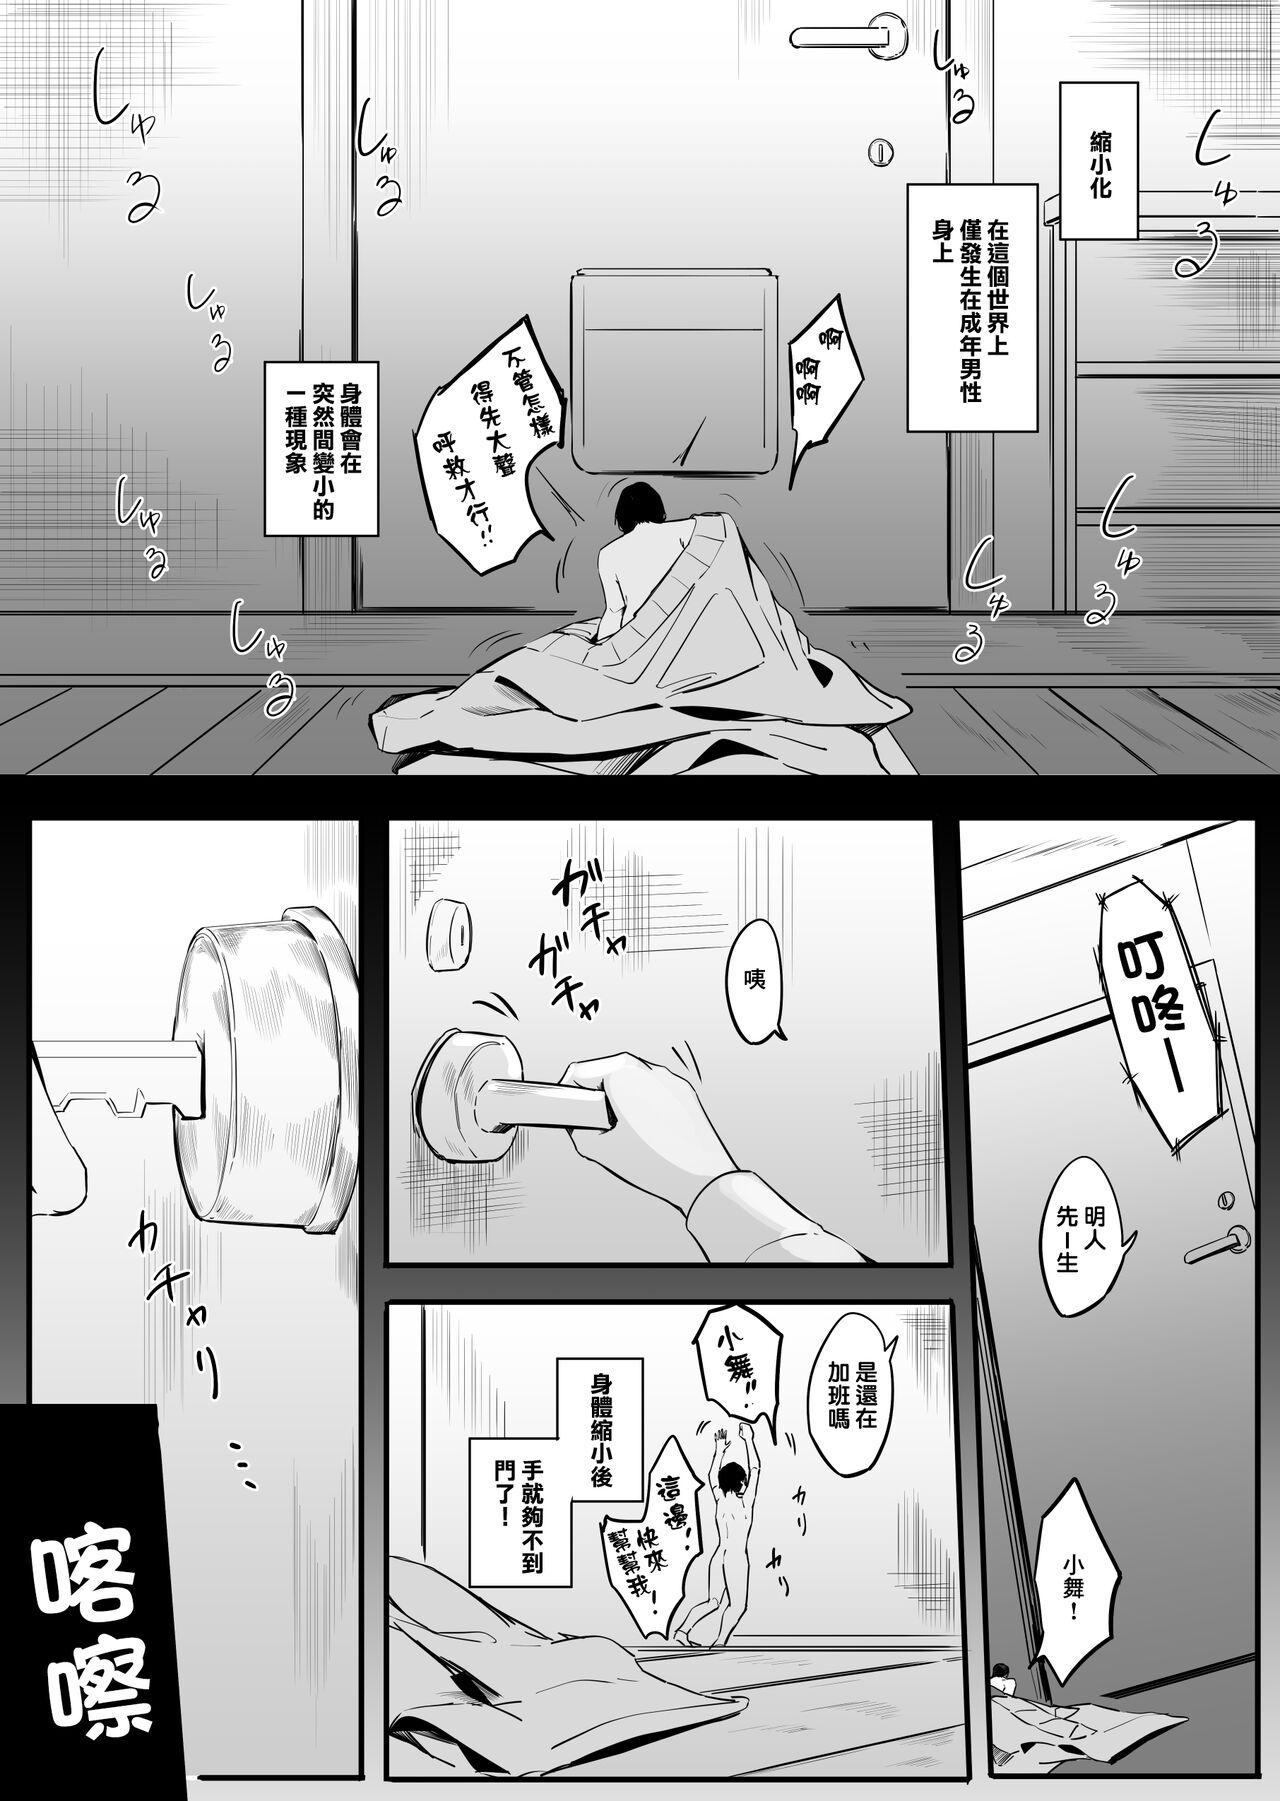 Curious Pantsu ni Nankin Shite Nioizeme Shite Kuru Onnanoko Jou + Chuu + Ge + Shuu | 把人軟禁在內褲裡用臭味折磨的女孩子・上 + 中 + 下 + 終 - Original Alternative - Page 7